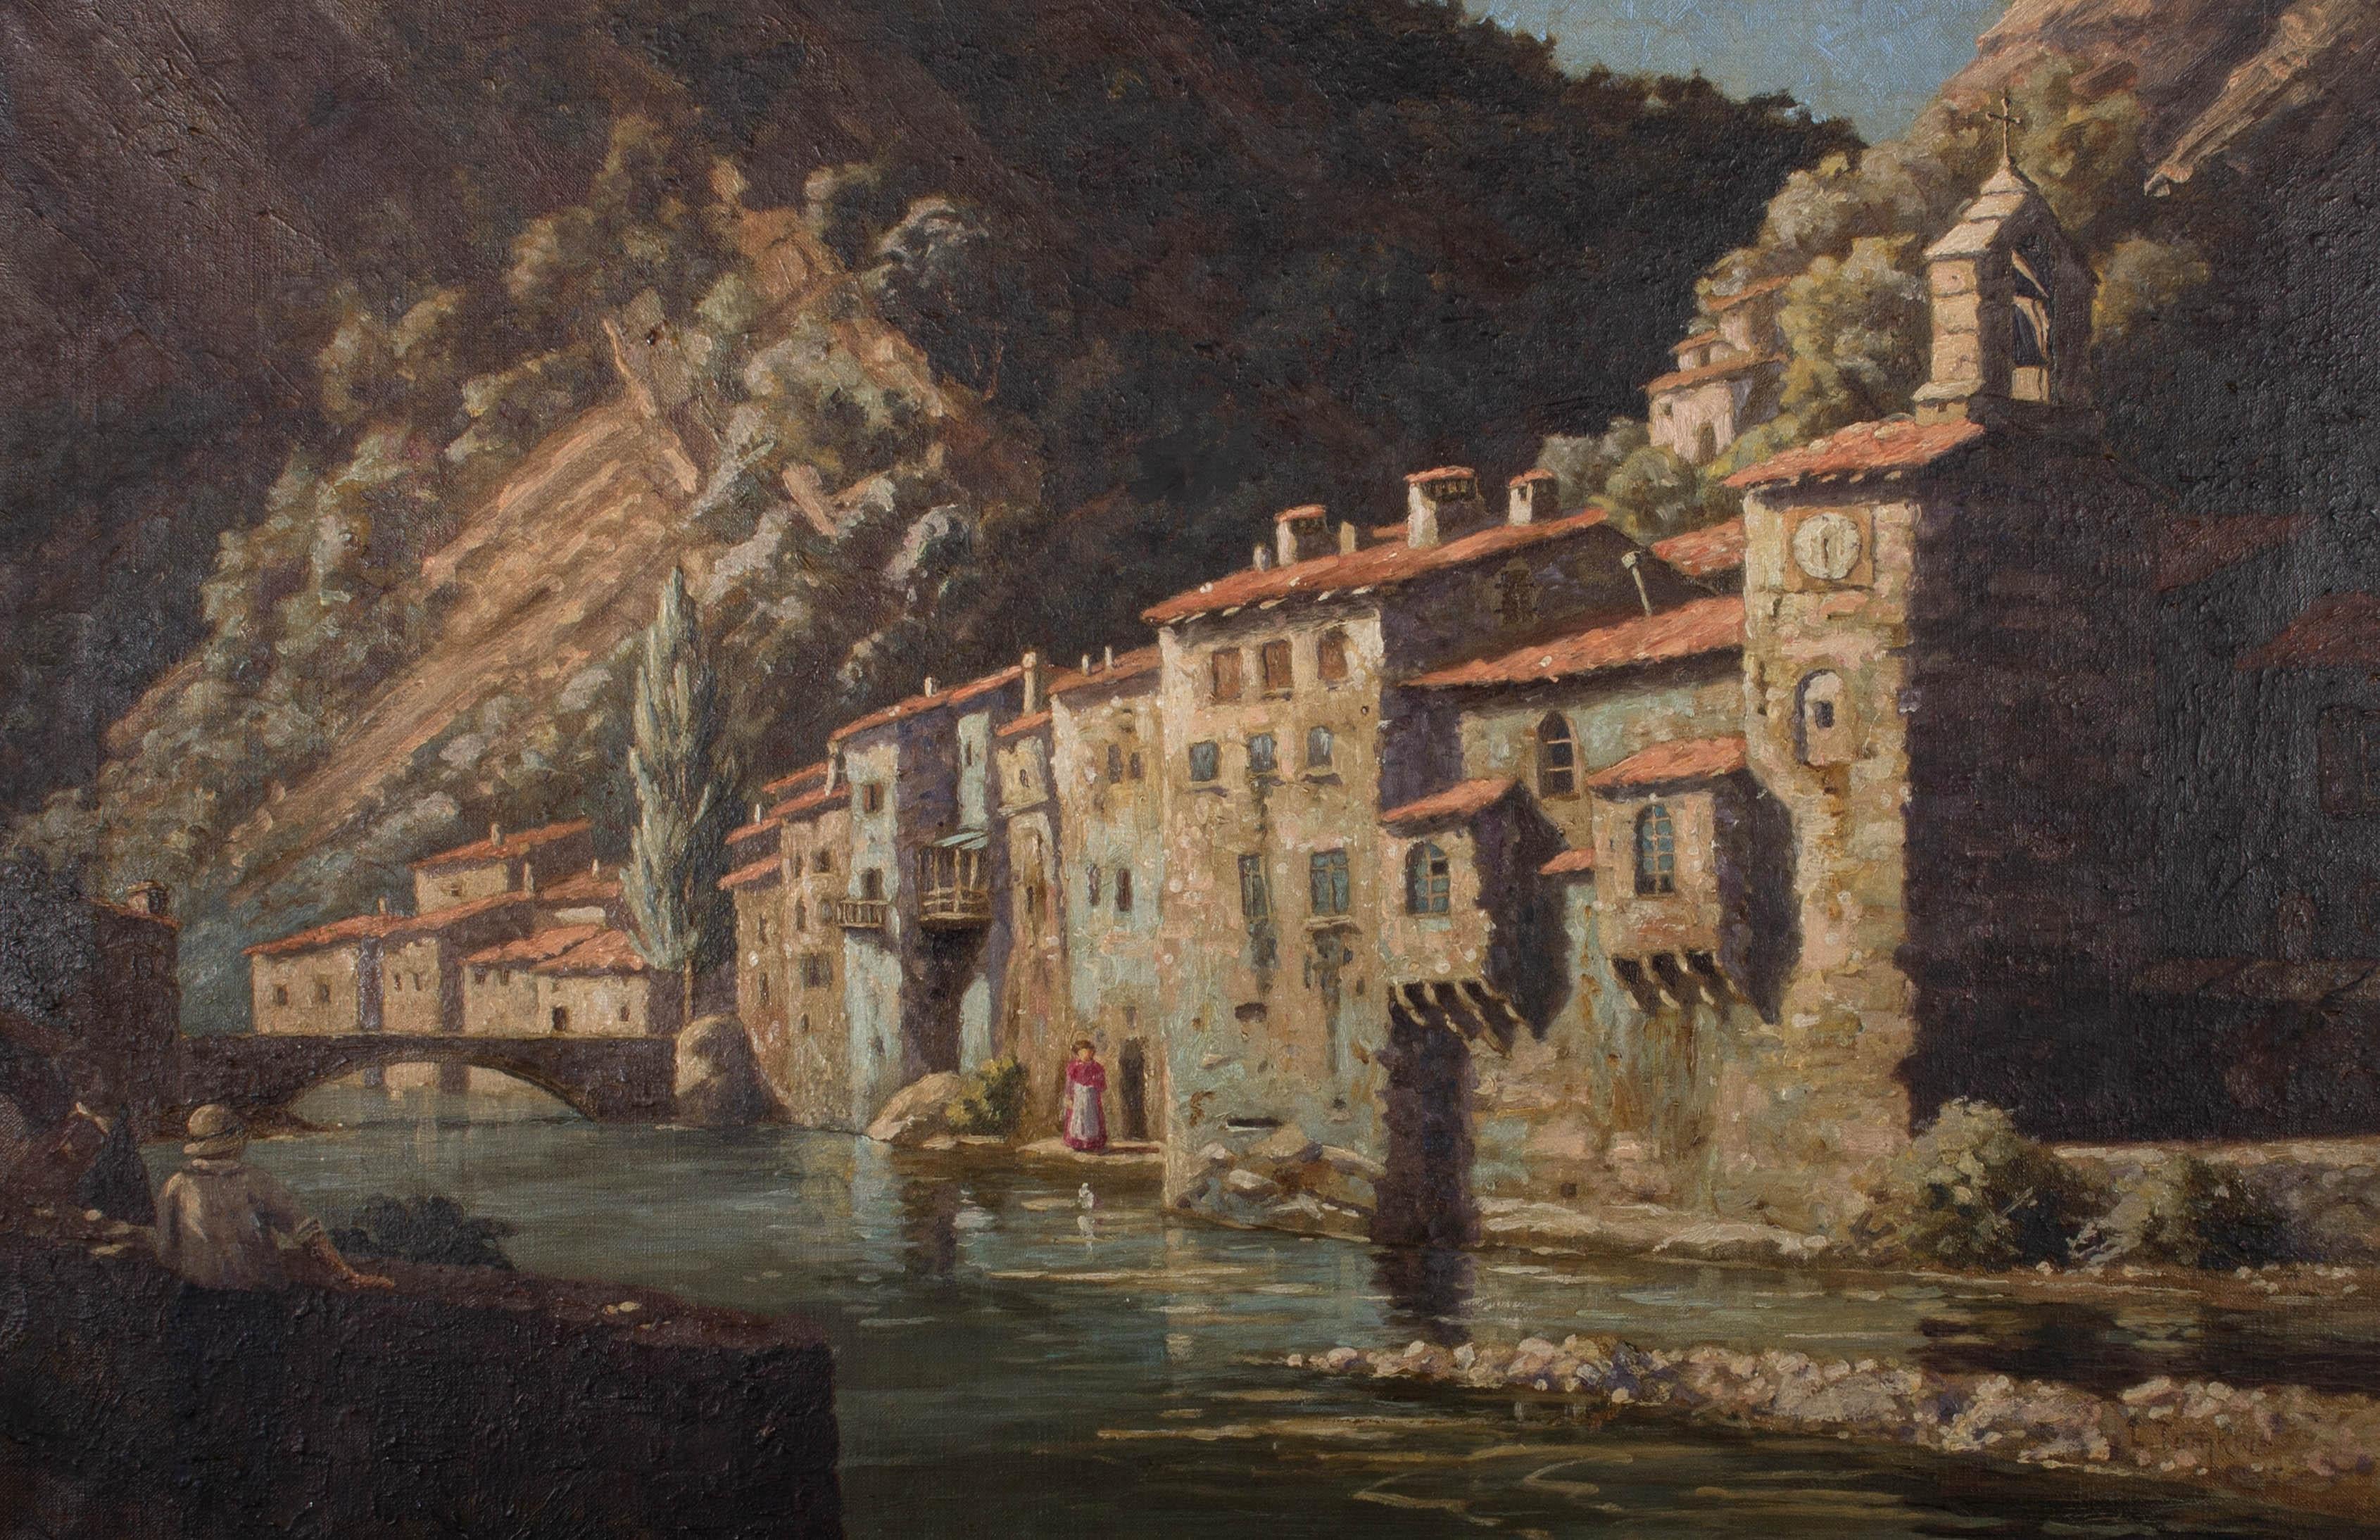 Une vue italienne idyllique de bâtiments historiques au bord d'une rivière, entourée de montagnes. La lumière du soleil rebondit sur l'eau et la pierre des bâtiments, apportant une atmosphère douce et chaleureuse à l'œuvre. Signé et daté sur le bord